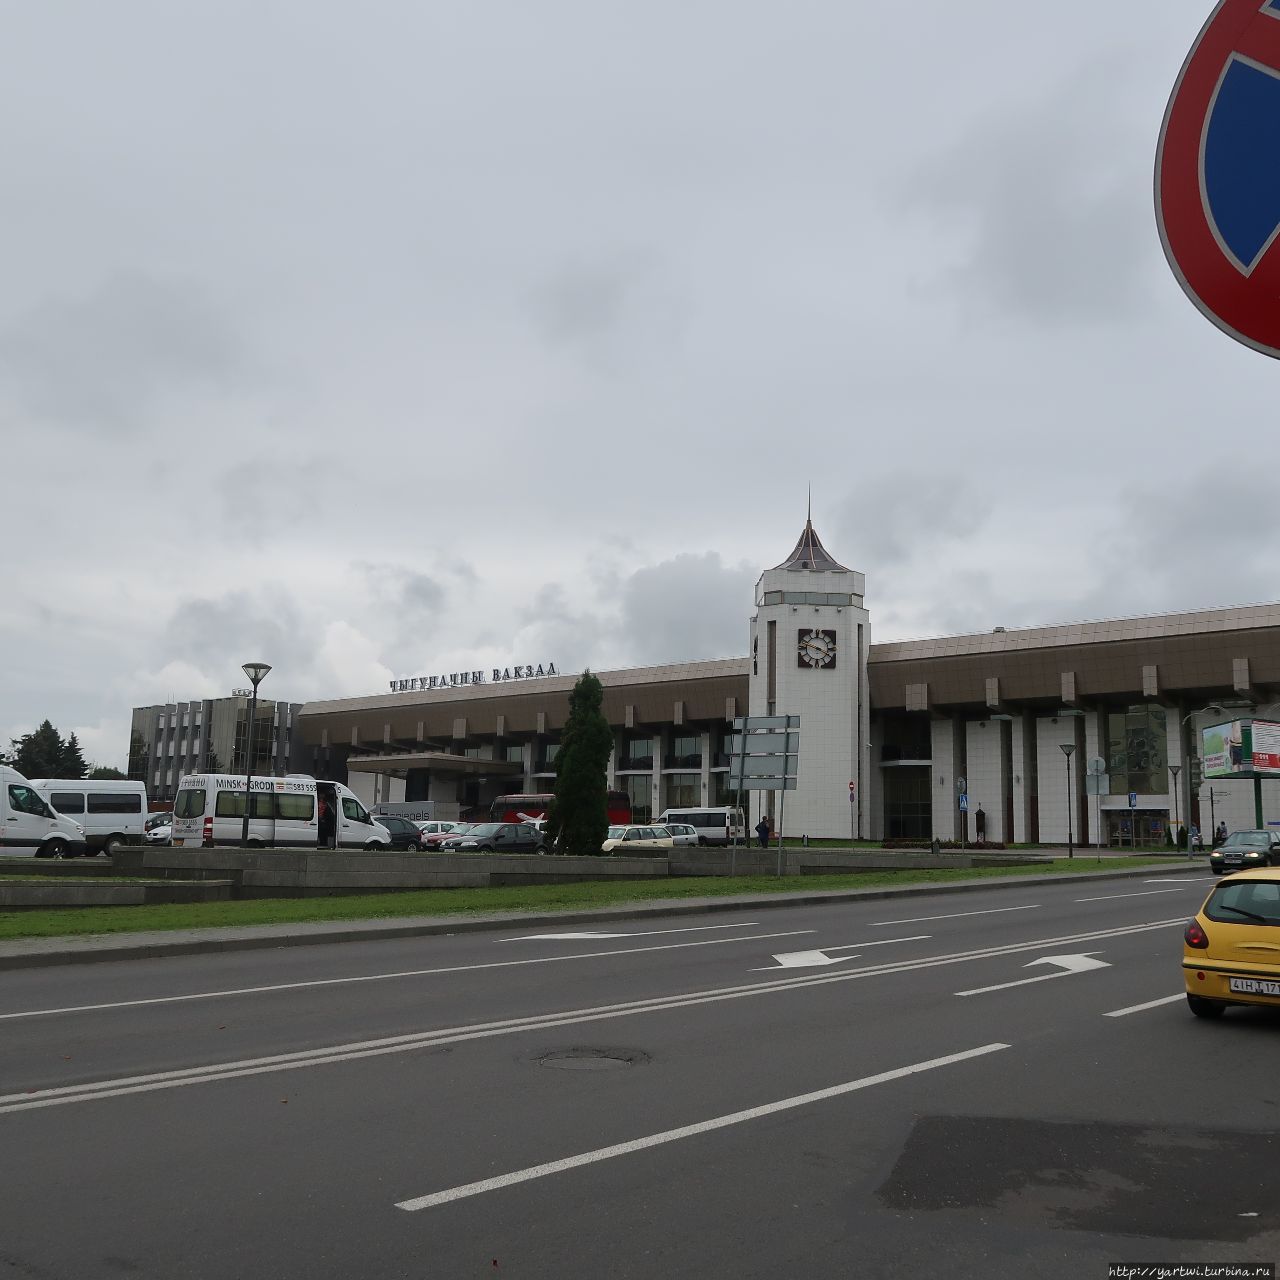 Улица выходит к железнодорожному вокзалу. Заходим на вокзал — знакомимся с расписанием, увы, нам будет удобнее возвращаться в Могилев через Минск на автобусе.